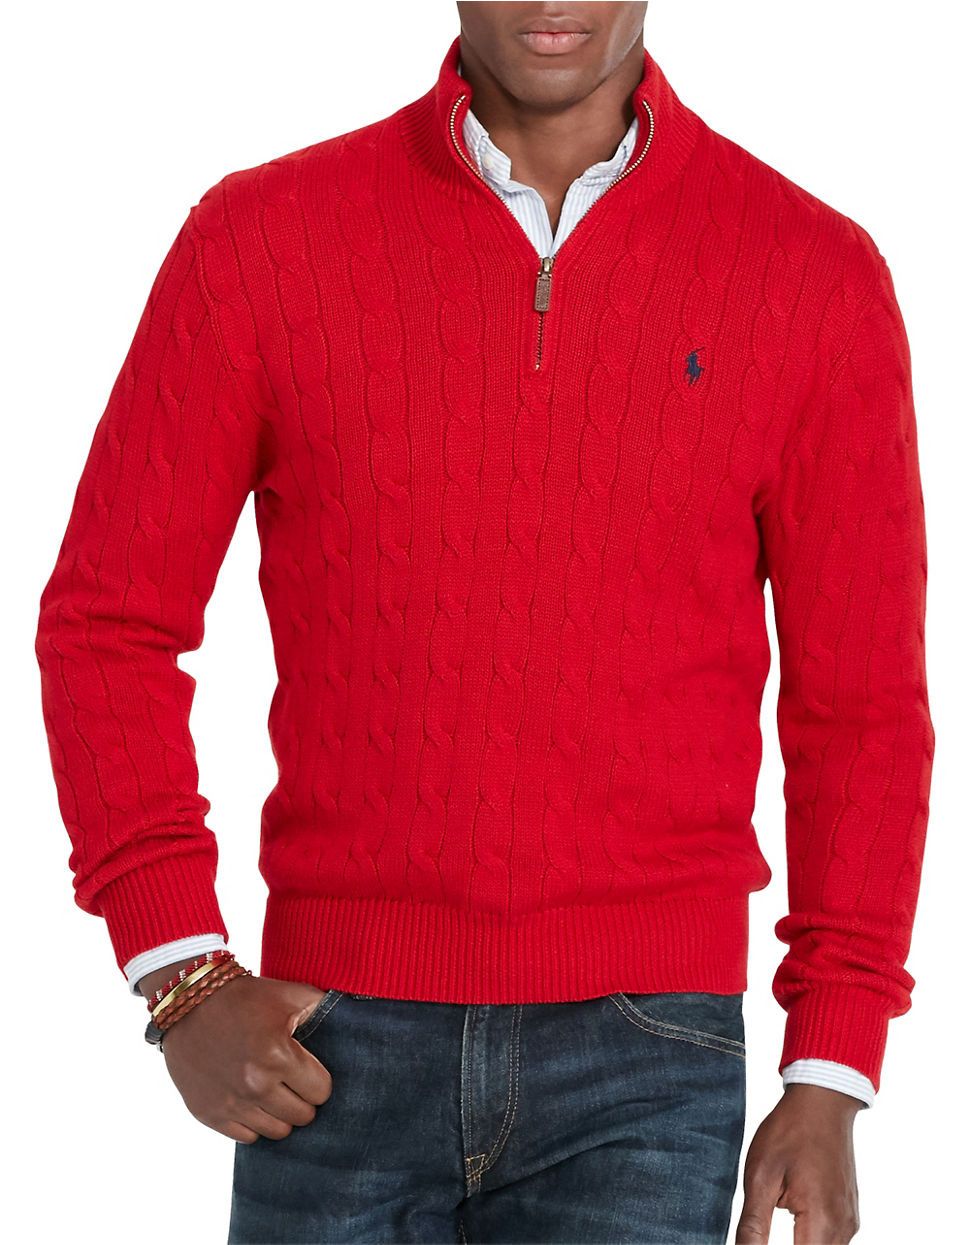 Ken Bone Sweater - So You Want to Dress Like Presidential Debate Style Star  Ken Bone